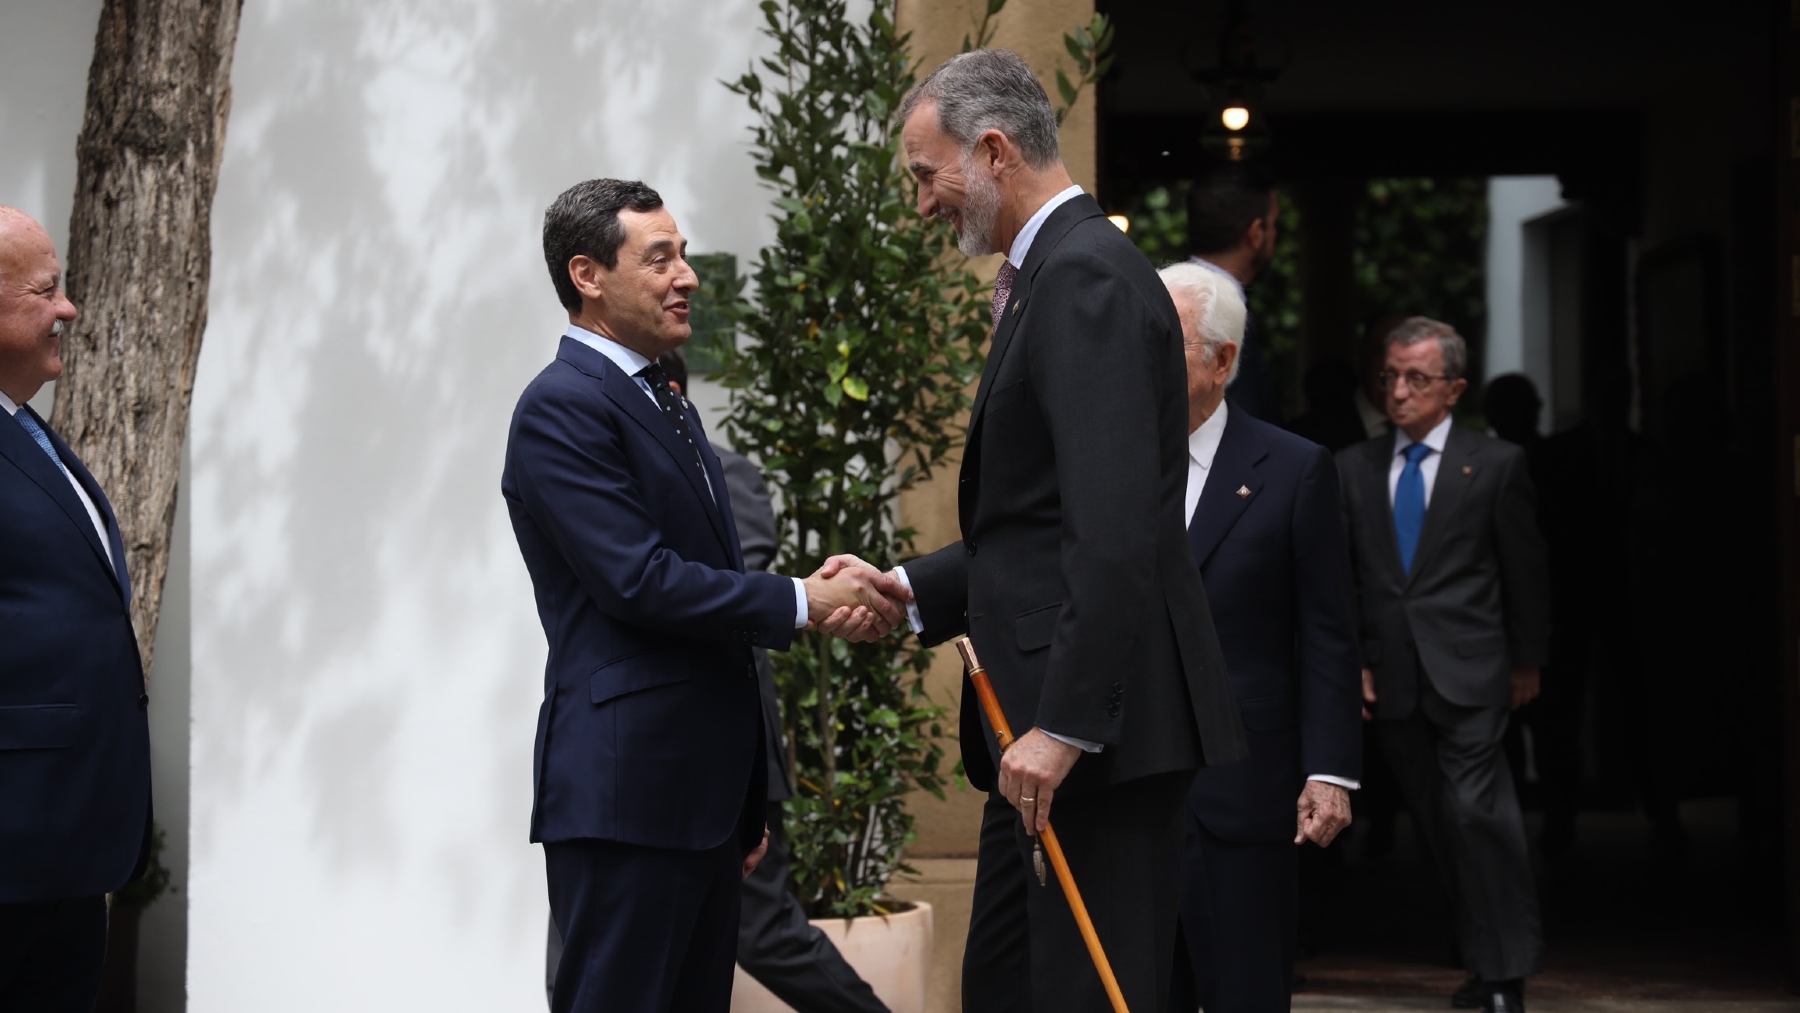 El Rey Felipe VI saluda a Juanma Moreno en una visita a Ronda, Málaga. (Foto: EP)